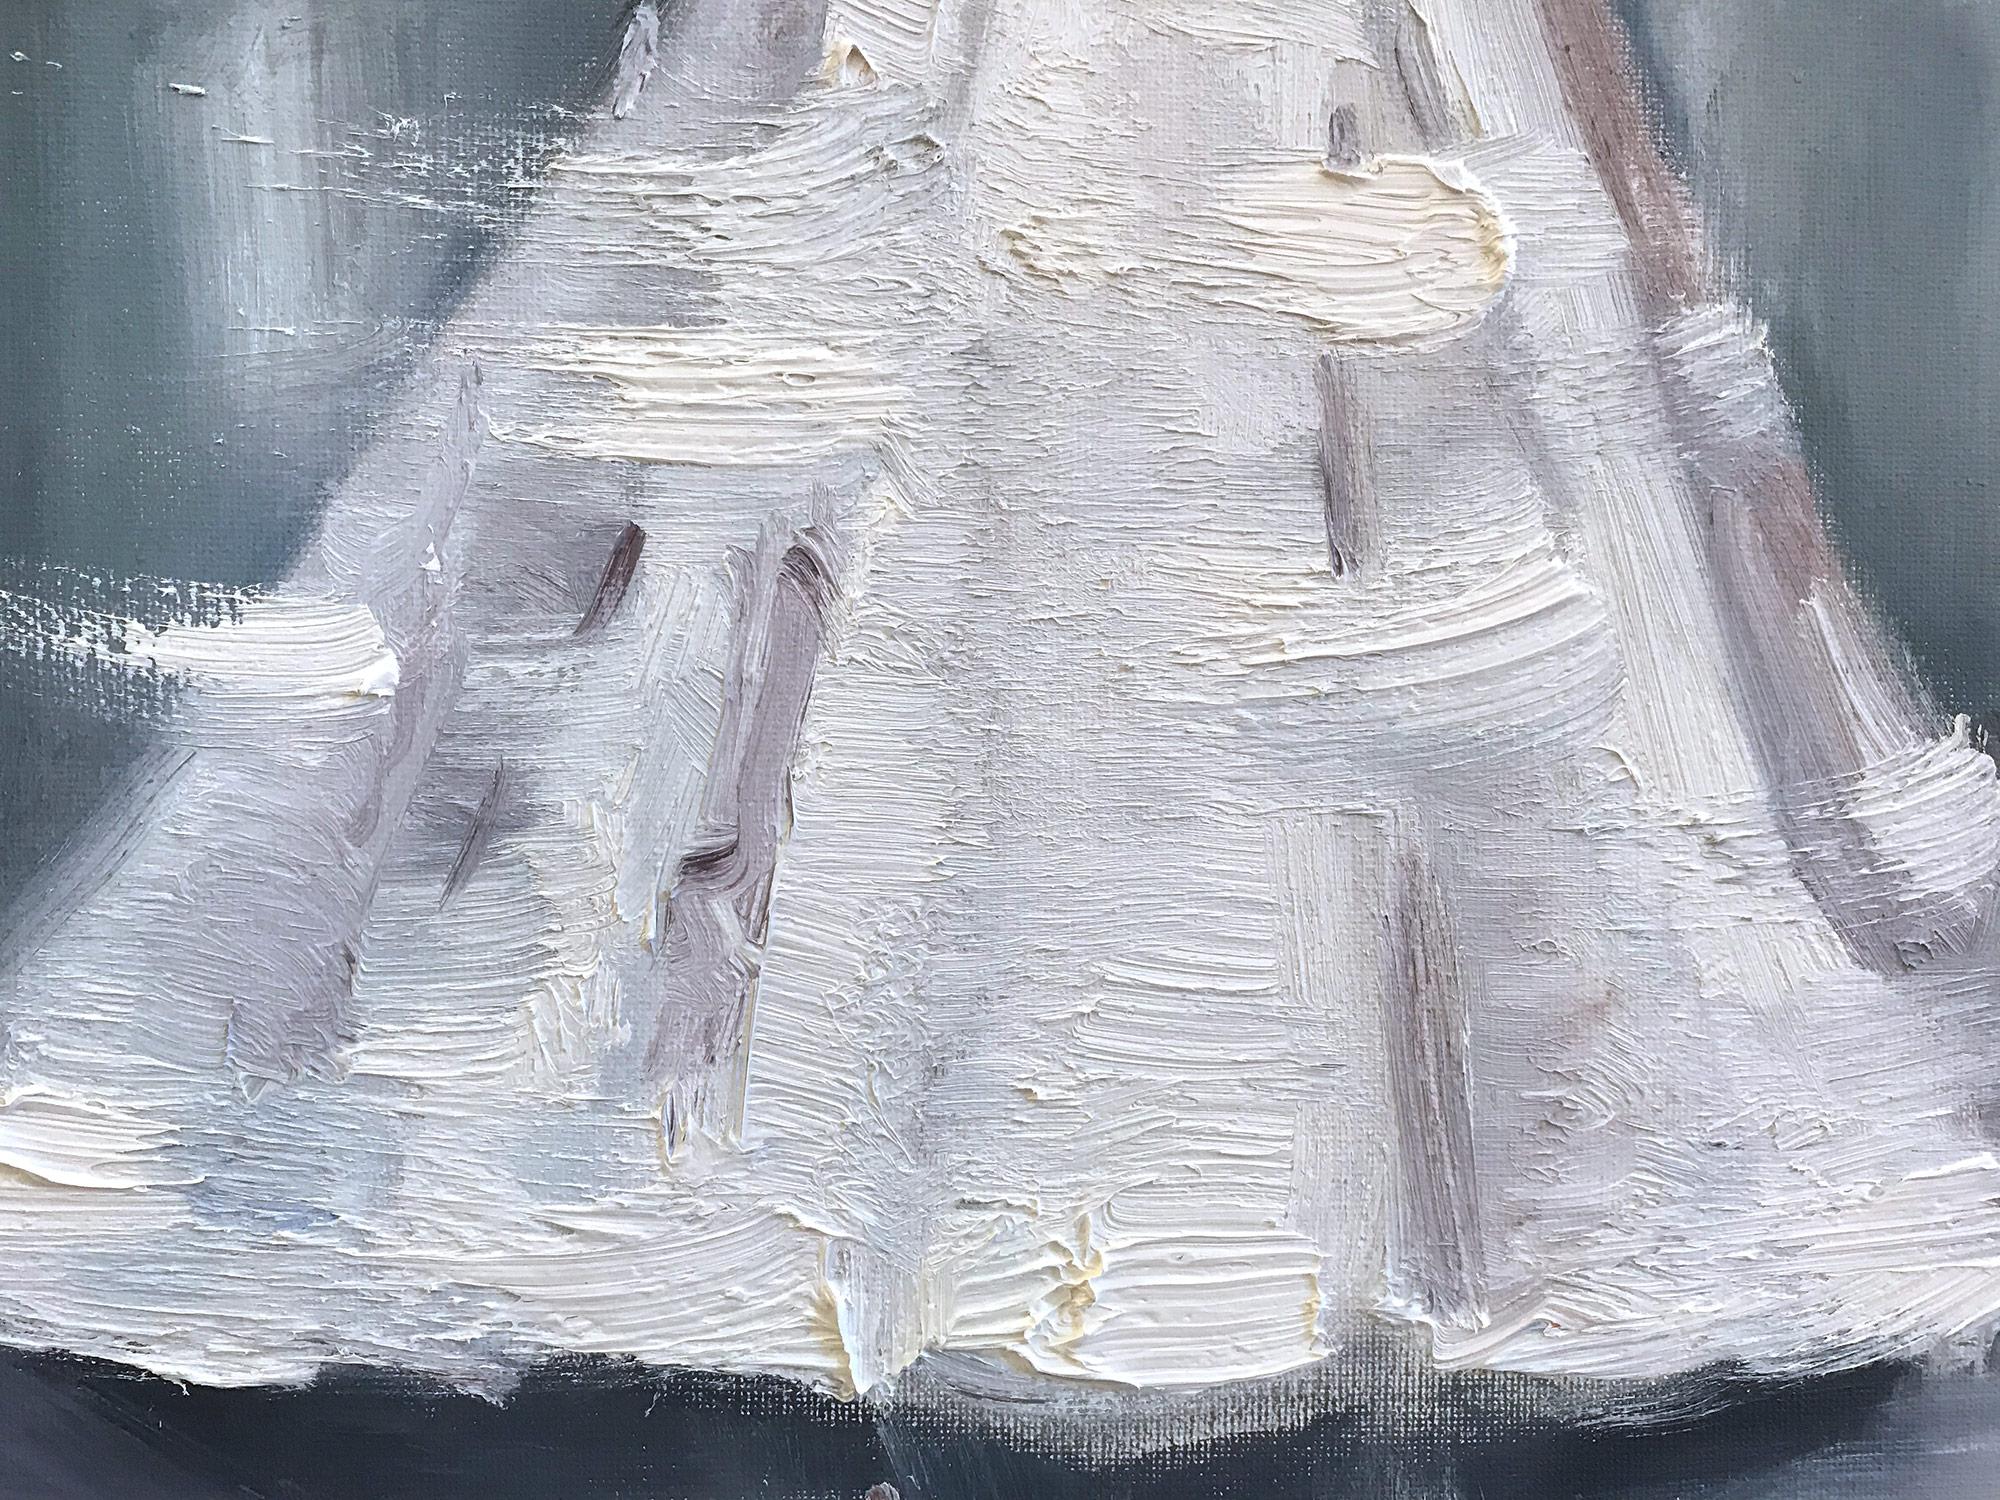 Eine sehr skurrile Darstellung einer Frau, die in einem weißen Hochzeitskleid auf dem Laufsteg in Frankreich auftaucht. Dieses Stück fängt die Essenz der Mode in Paaren ein. In einem sehr modernen und impressionistischen Stil gehalten, sind die